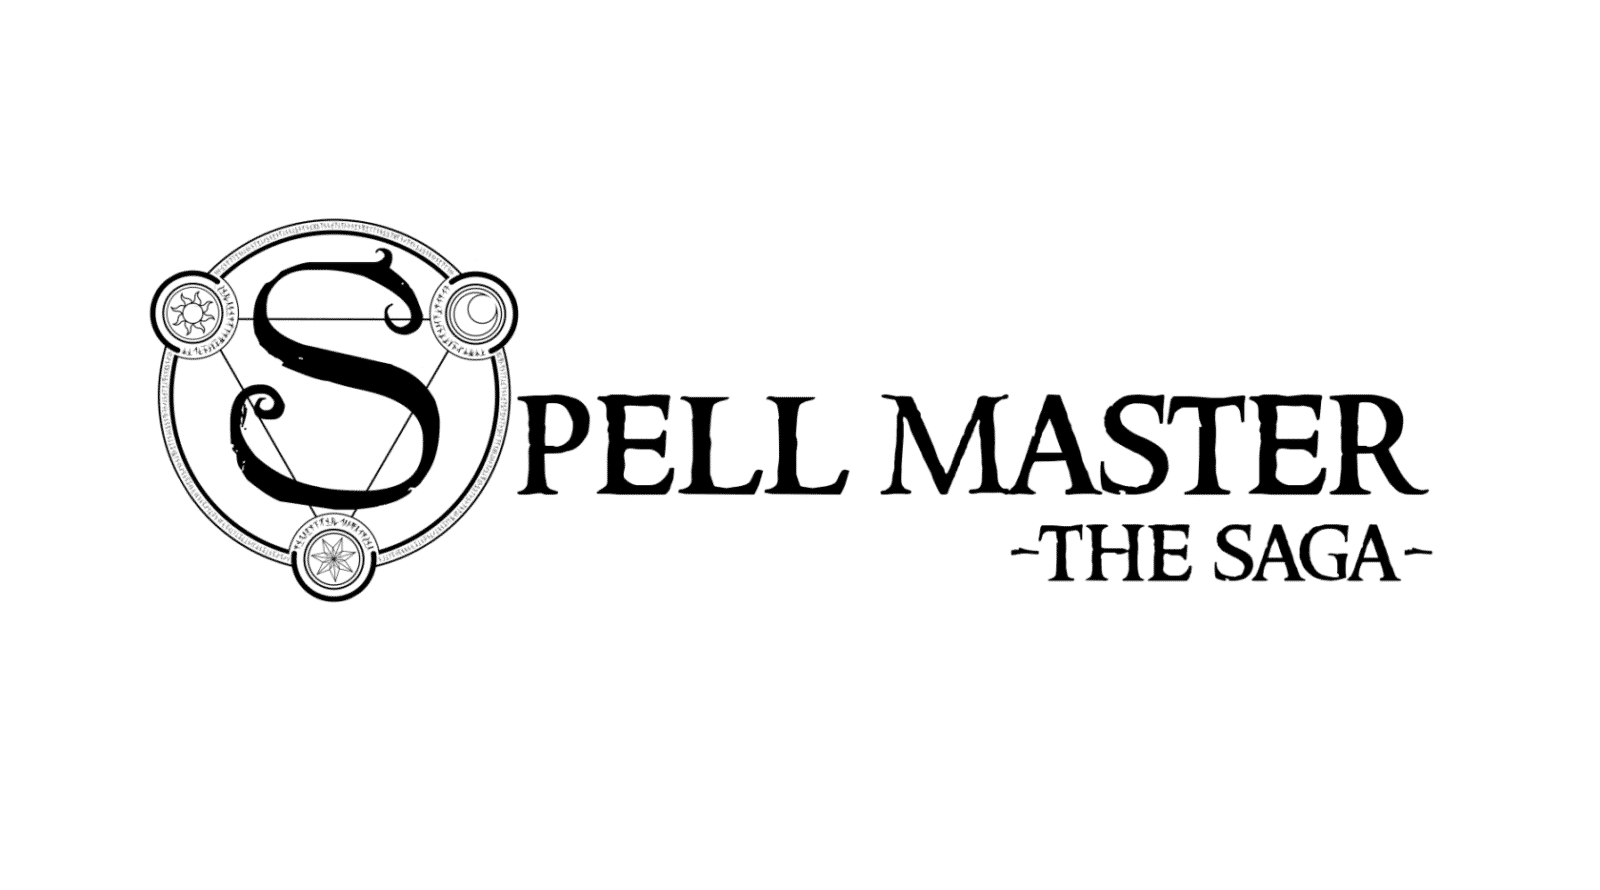 spellmaster the saga logo